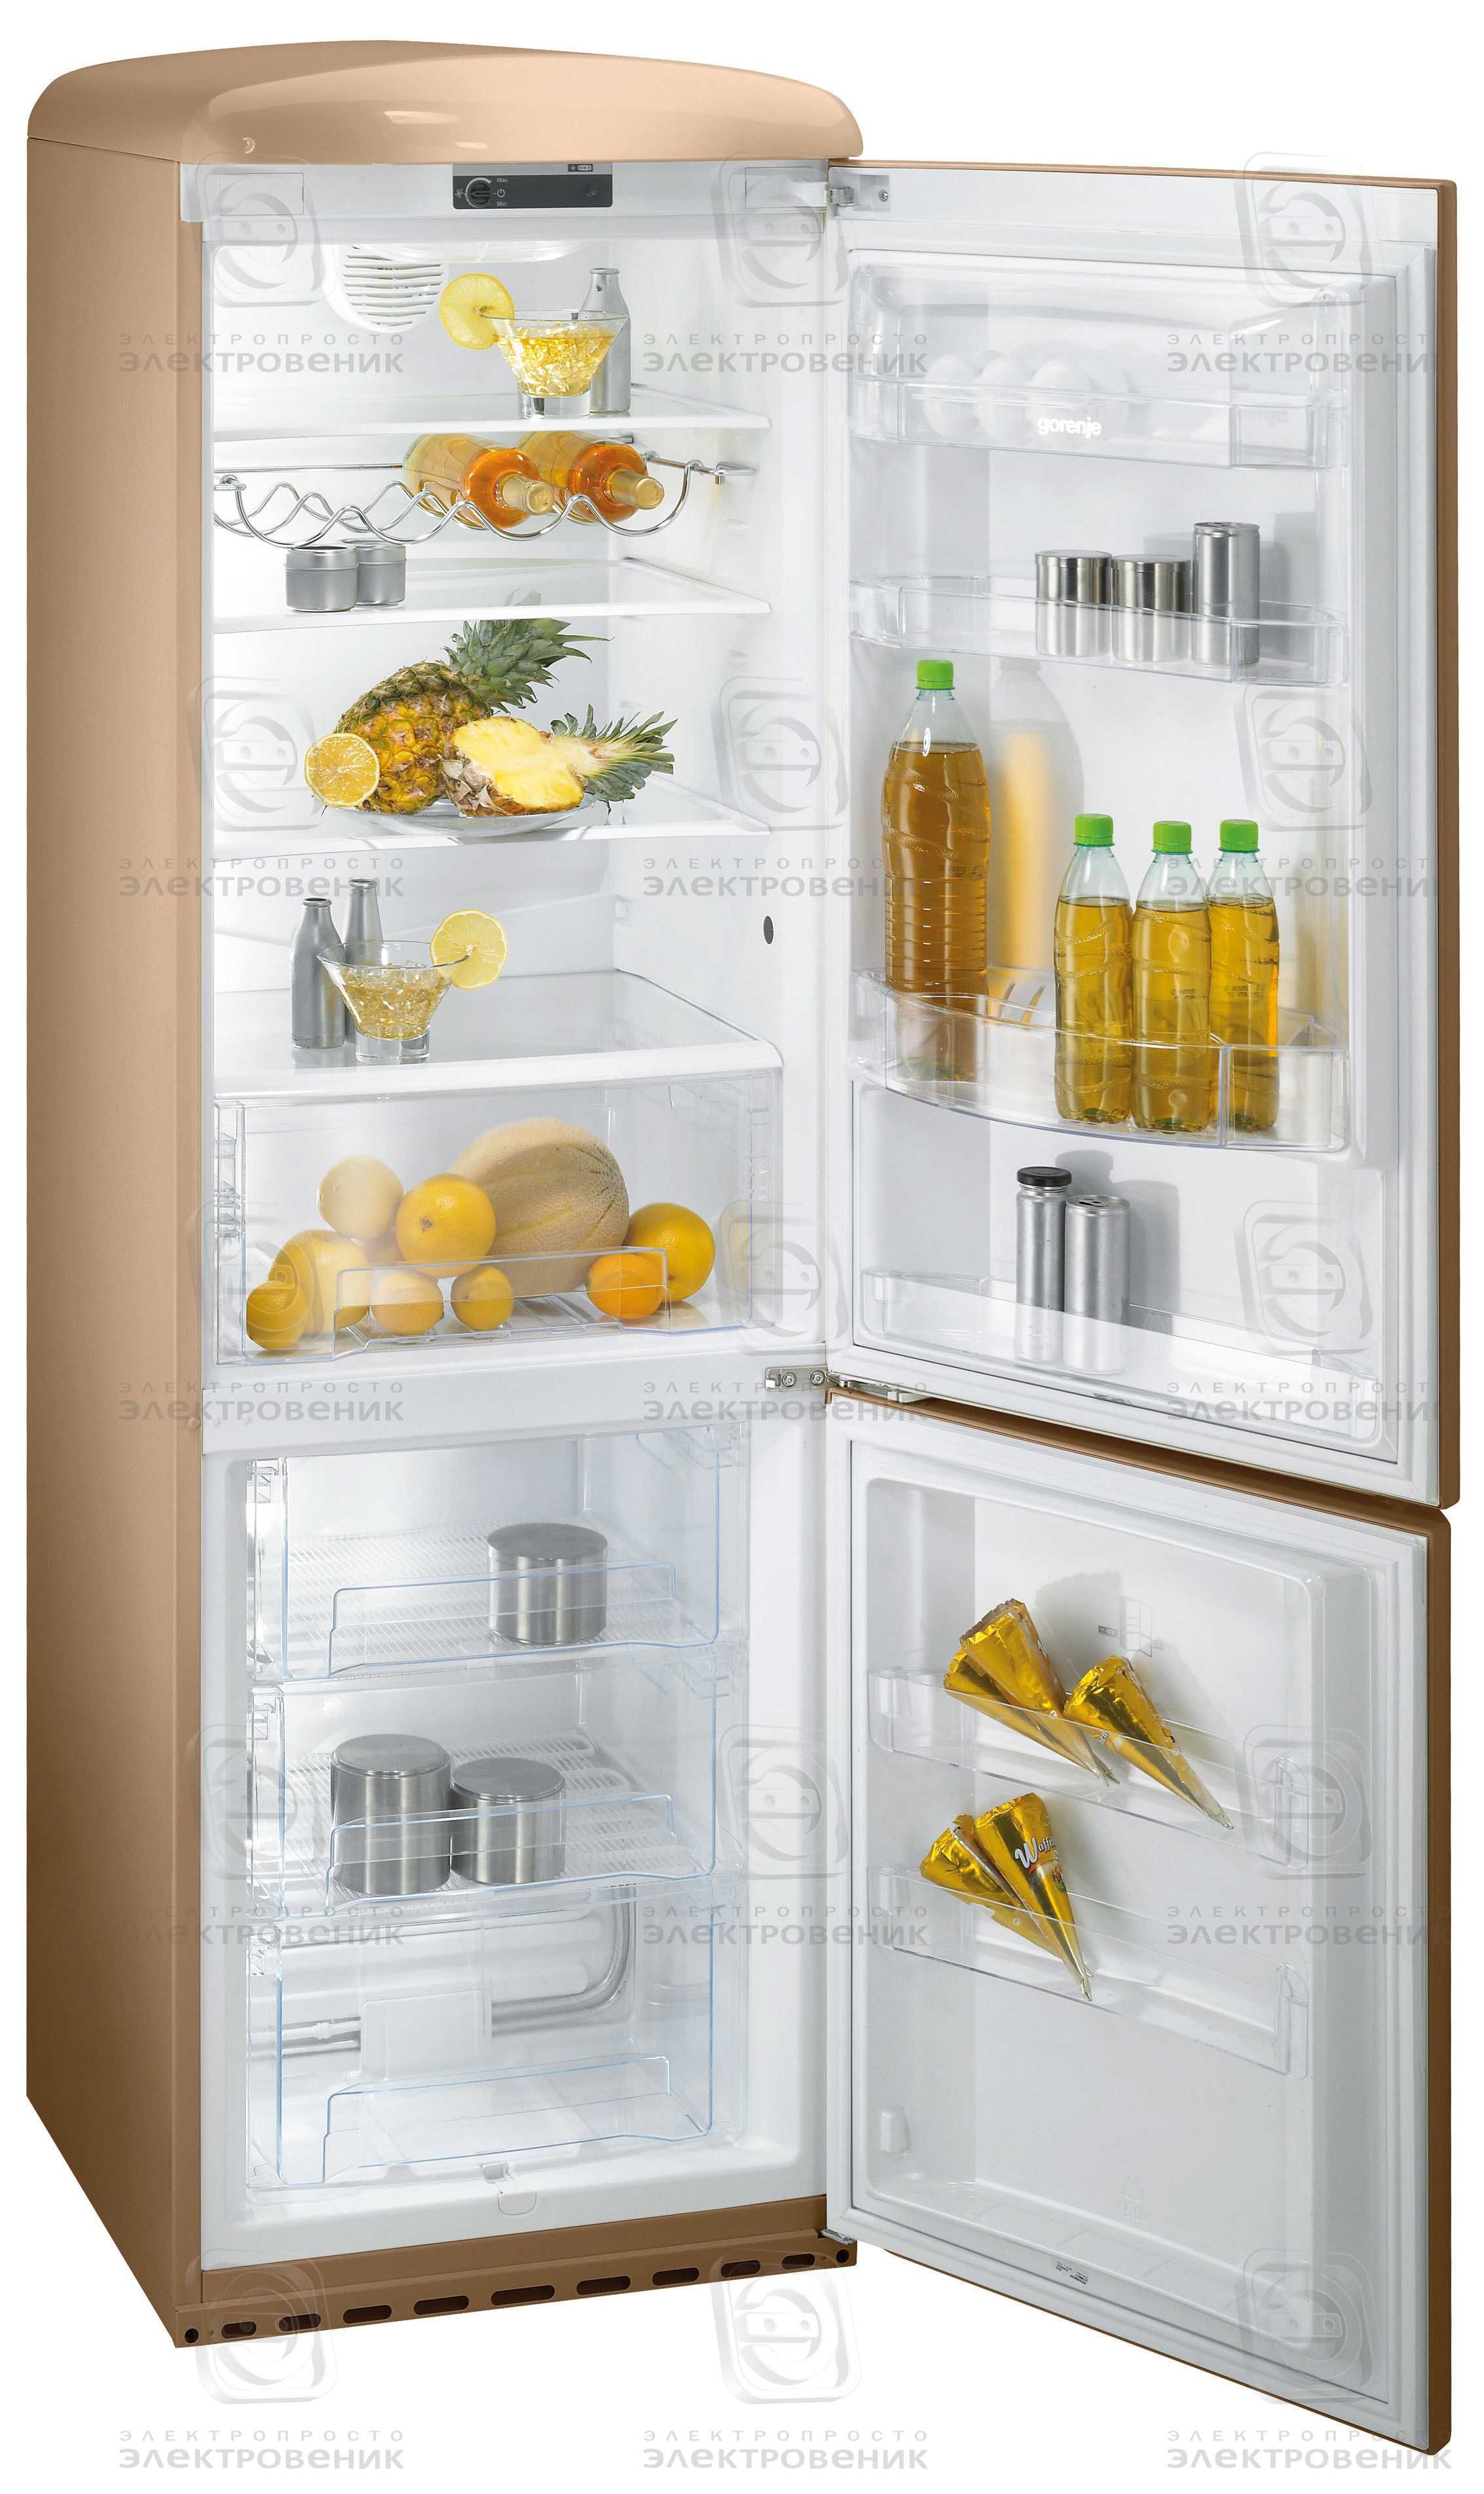 Ремонт холодильников и холодильных камер